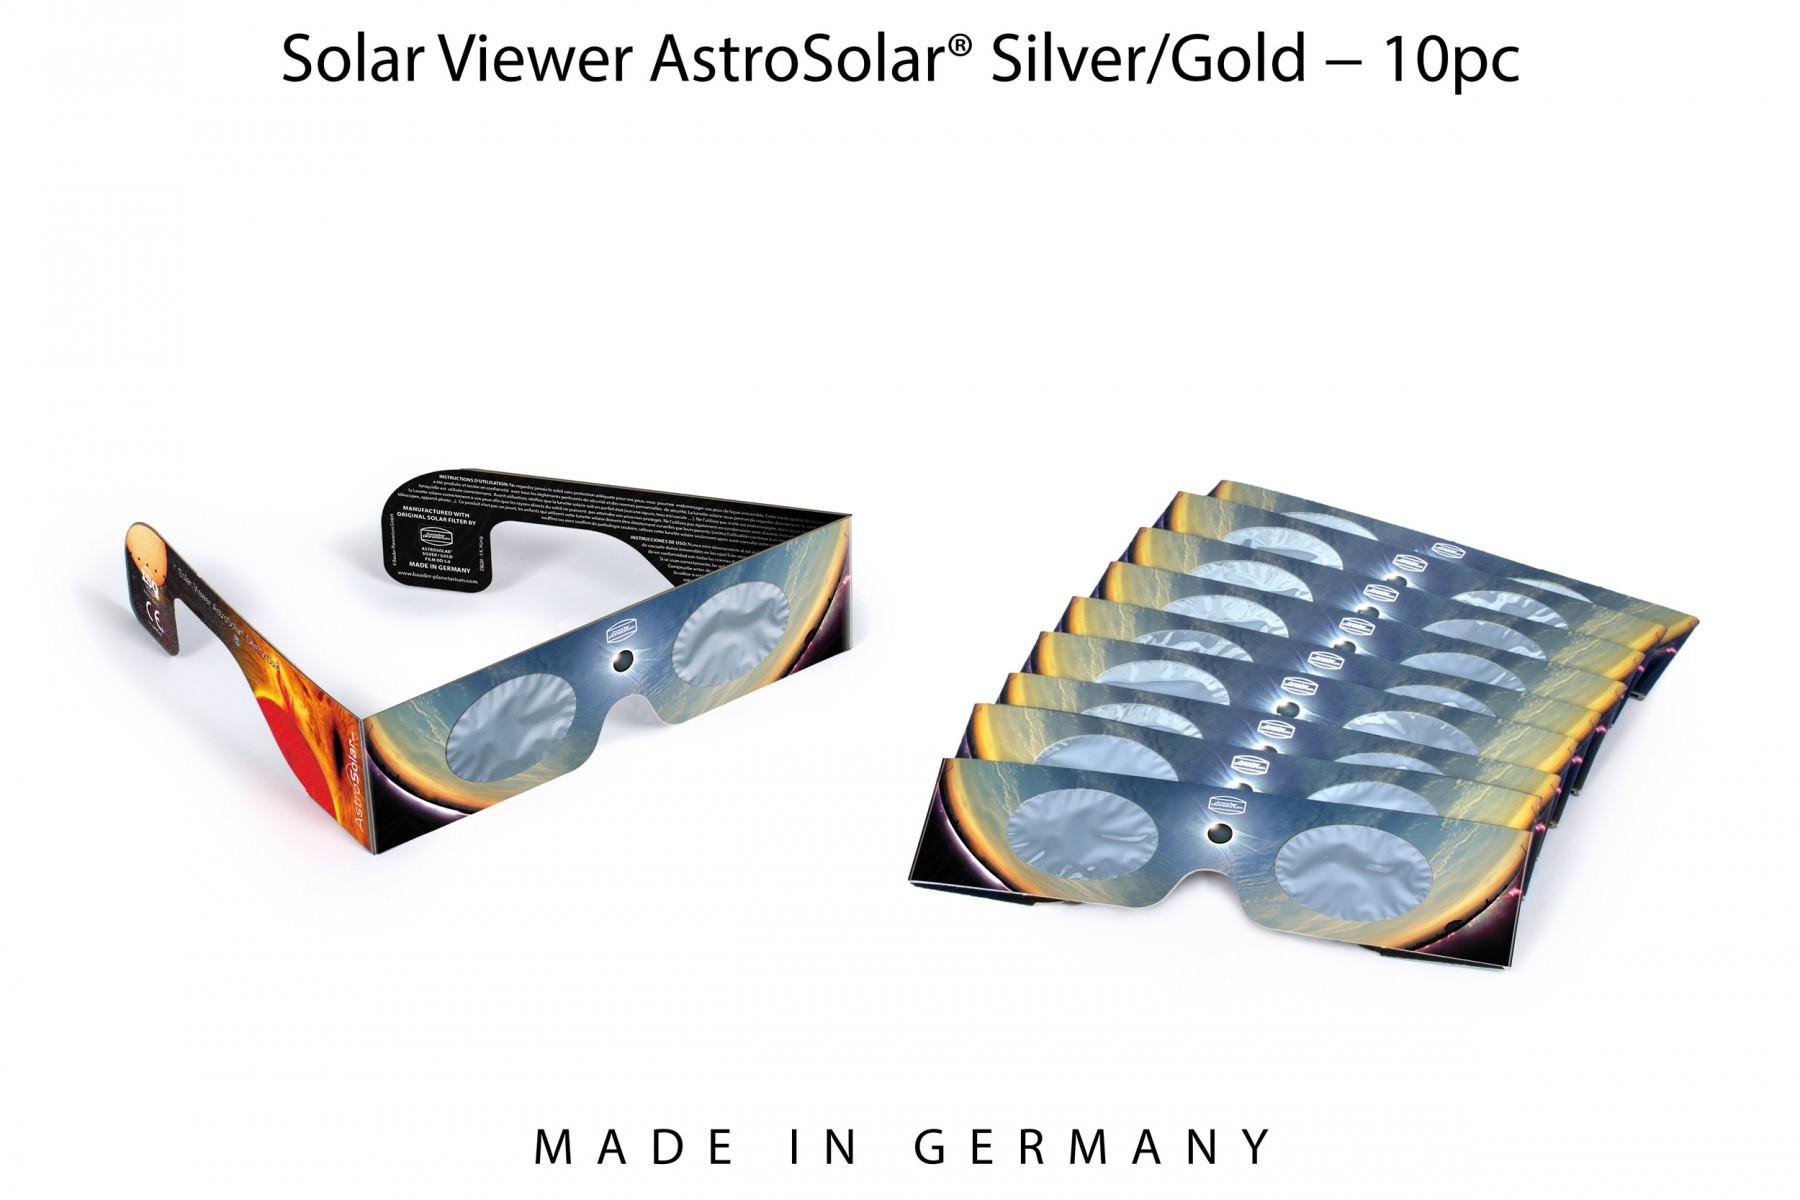  Occhialino per eclisse - Kit 10 pezzi Occhialino Solar Viewer AstroSolar Silver/Gold - densità 5,0 